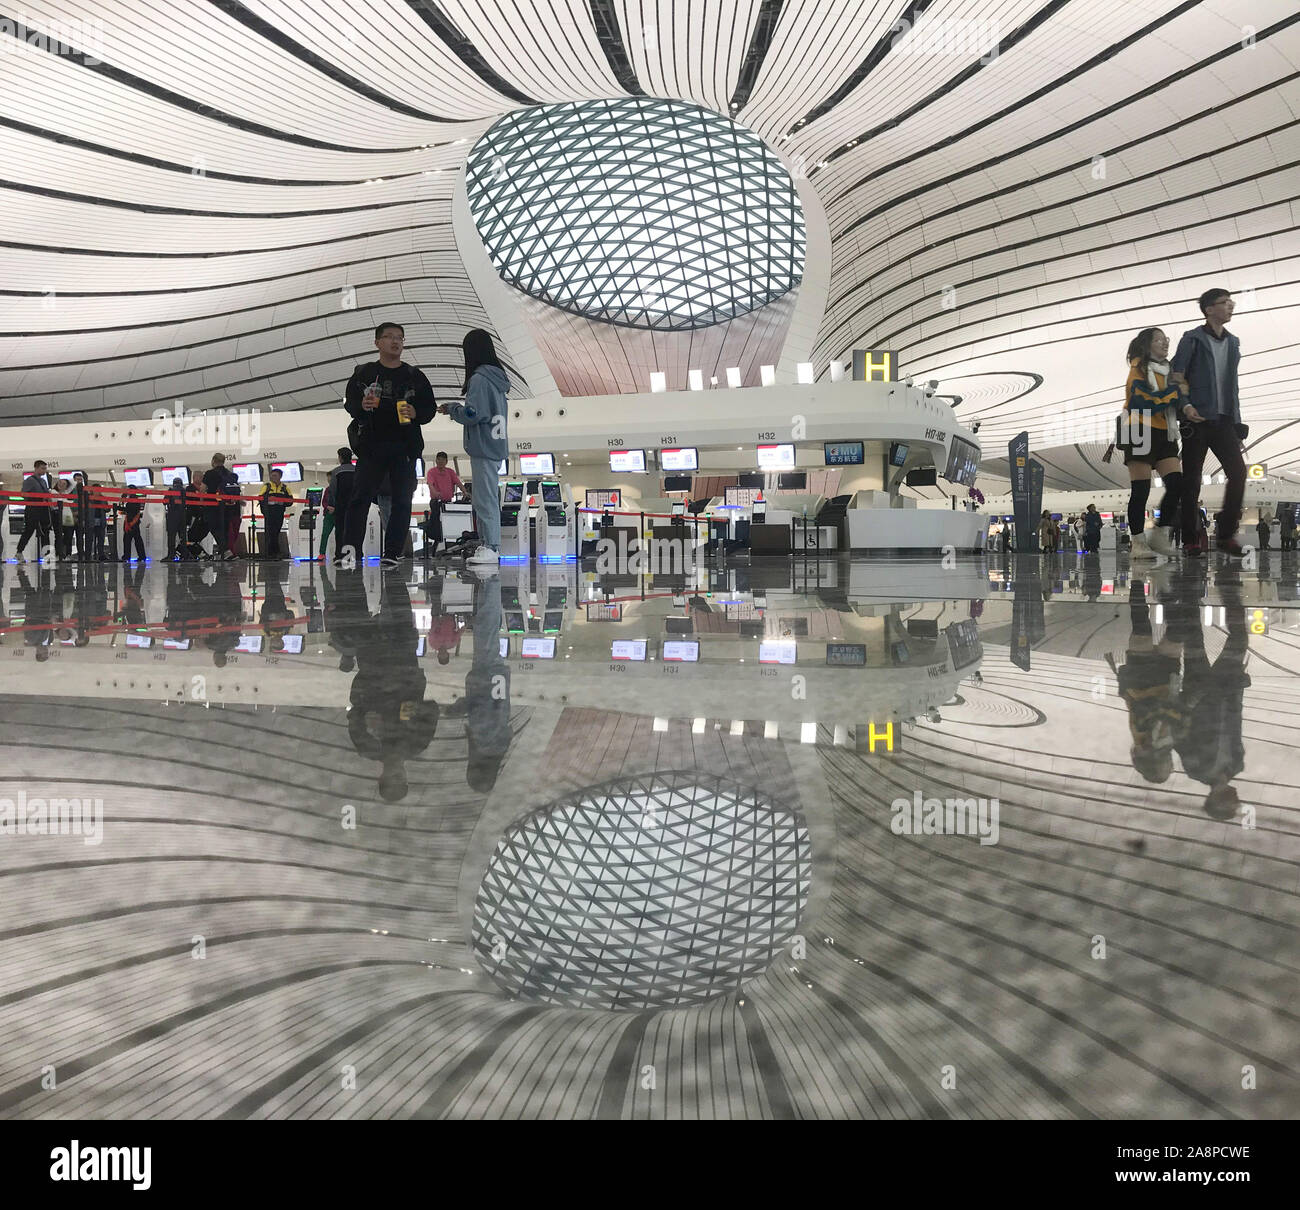 (191110) - Peking, 10. November 2019 (Xinhua) - Mobile Photo zeigt das Interieur der Pekinger Daxing internationalen Flughafen in Peking, der Hauptstadt von China, Okt. 19, 2019. (Xinhua / Ding Hongfa) Stockfoto